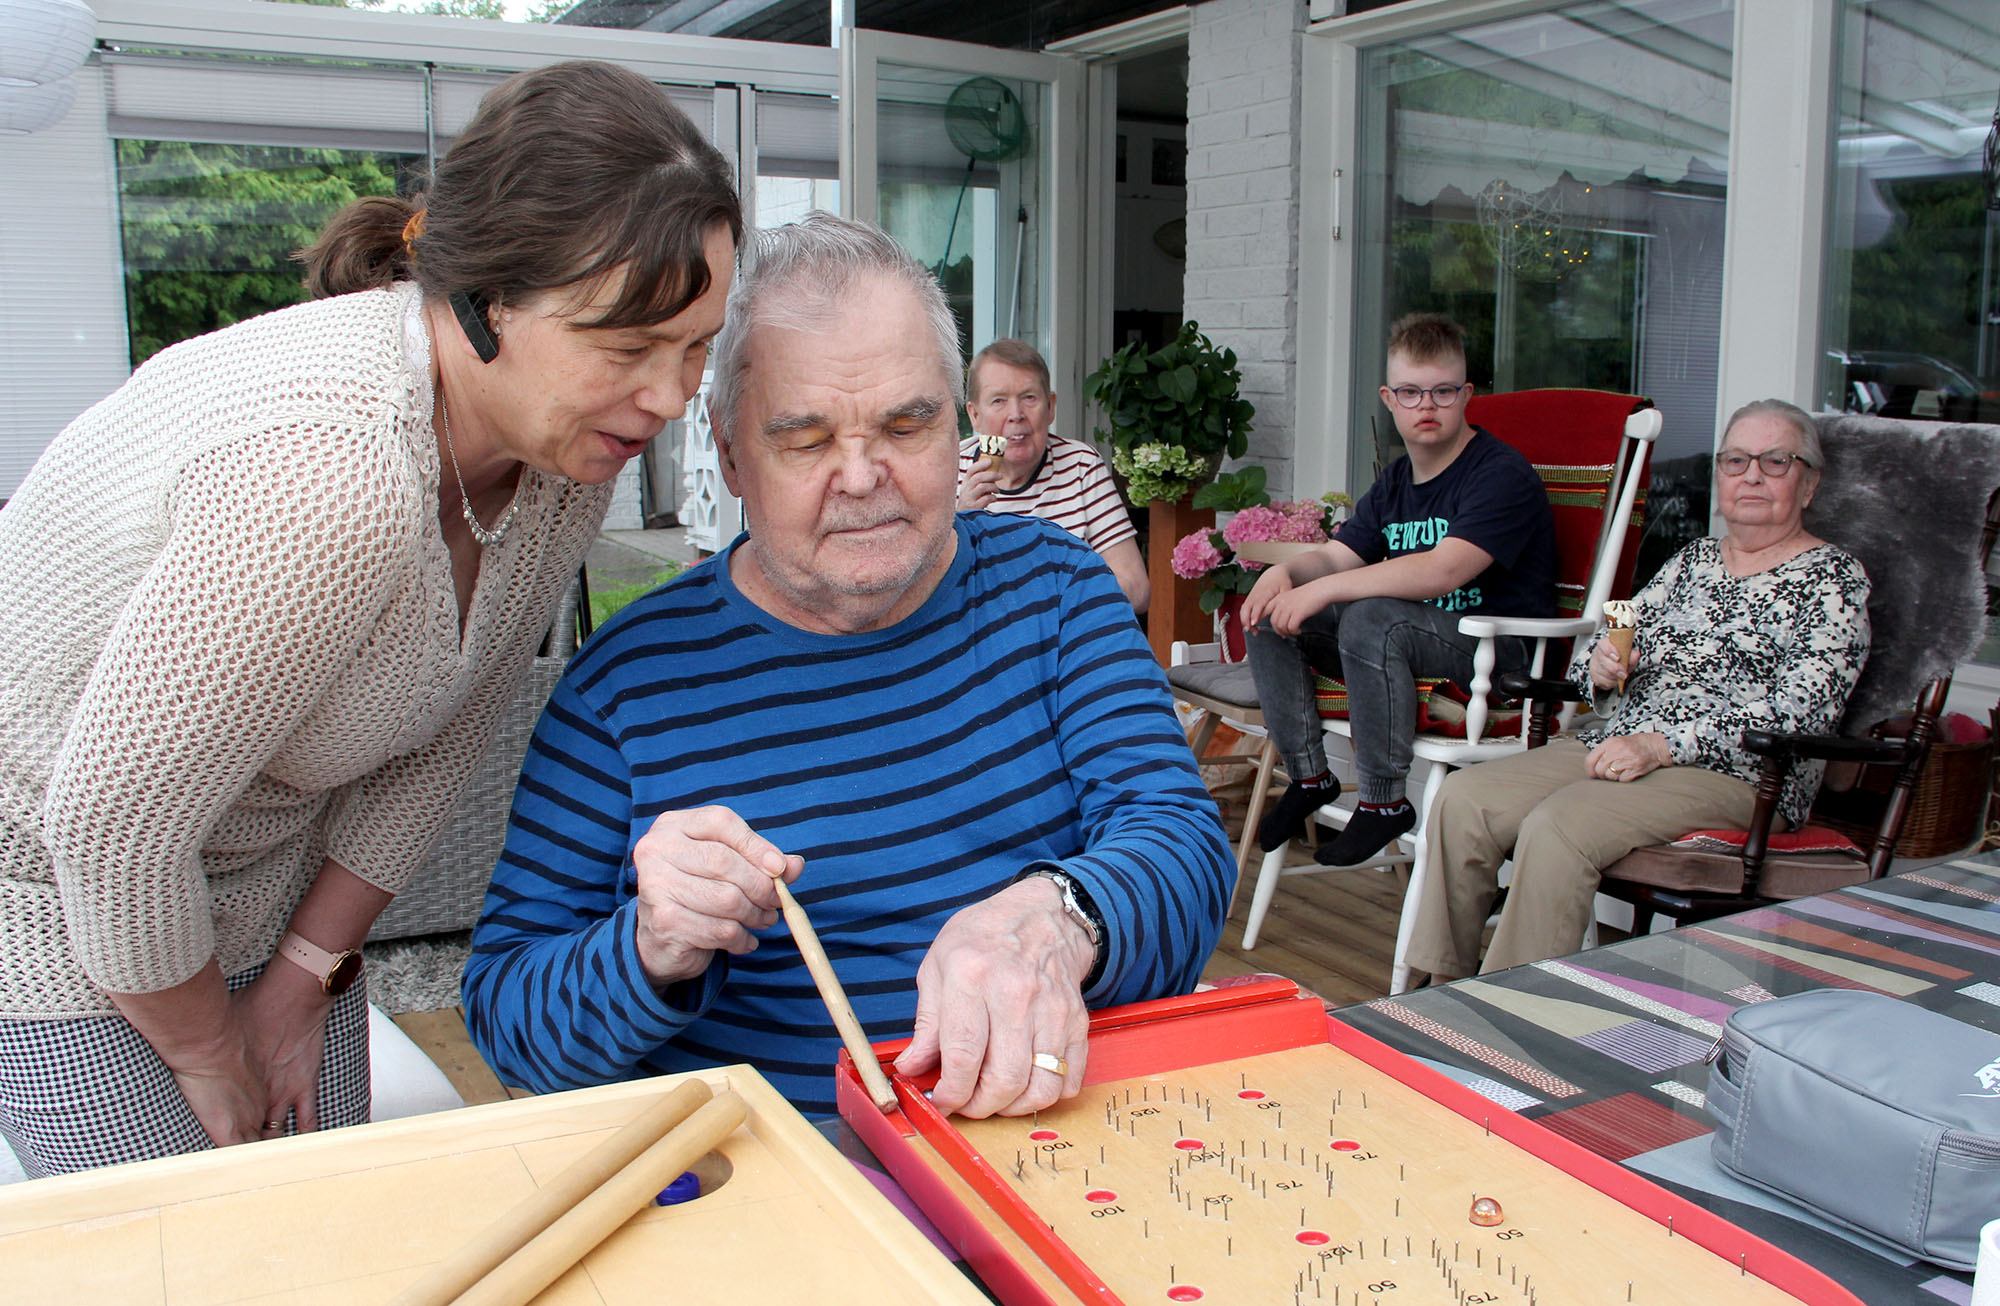 Mies ja nainen pelaavat fortuna peliä talon kuistilla. Takana näkyy myös muita ihmisiä.